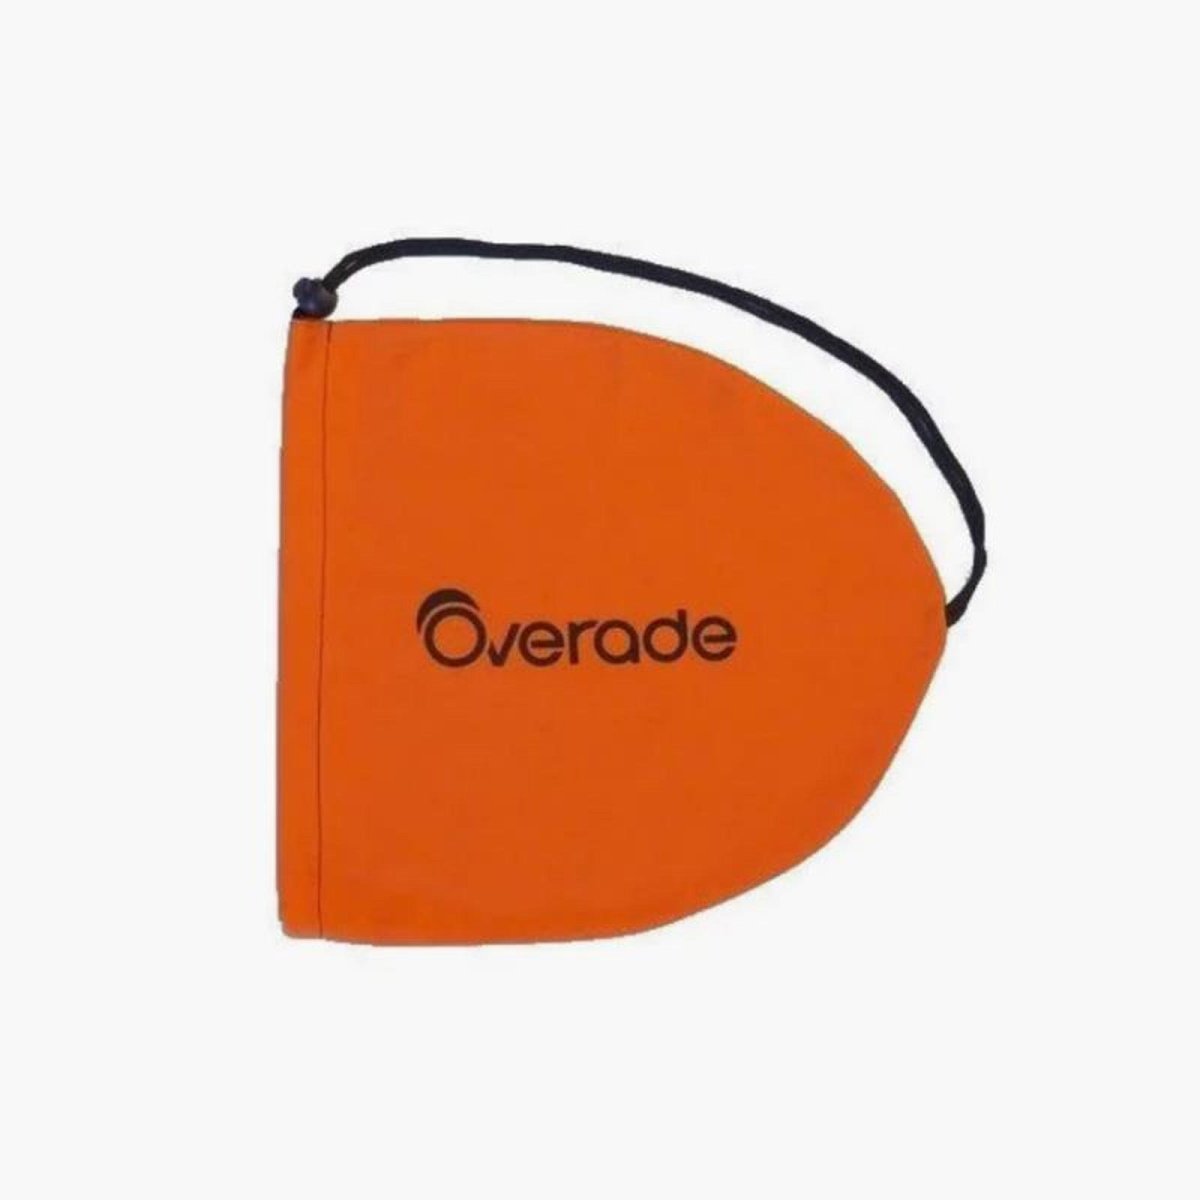 Étui de transport et de rangement pour casque Overade PLIXI - Overade #couleur_Orange